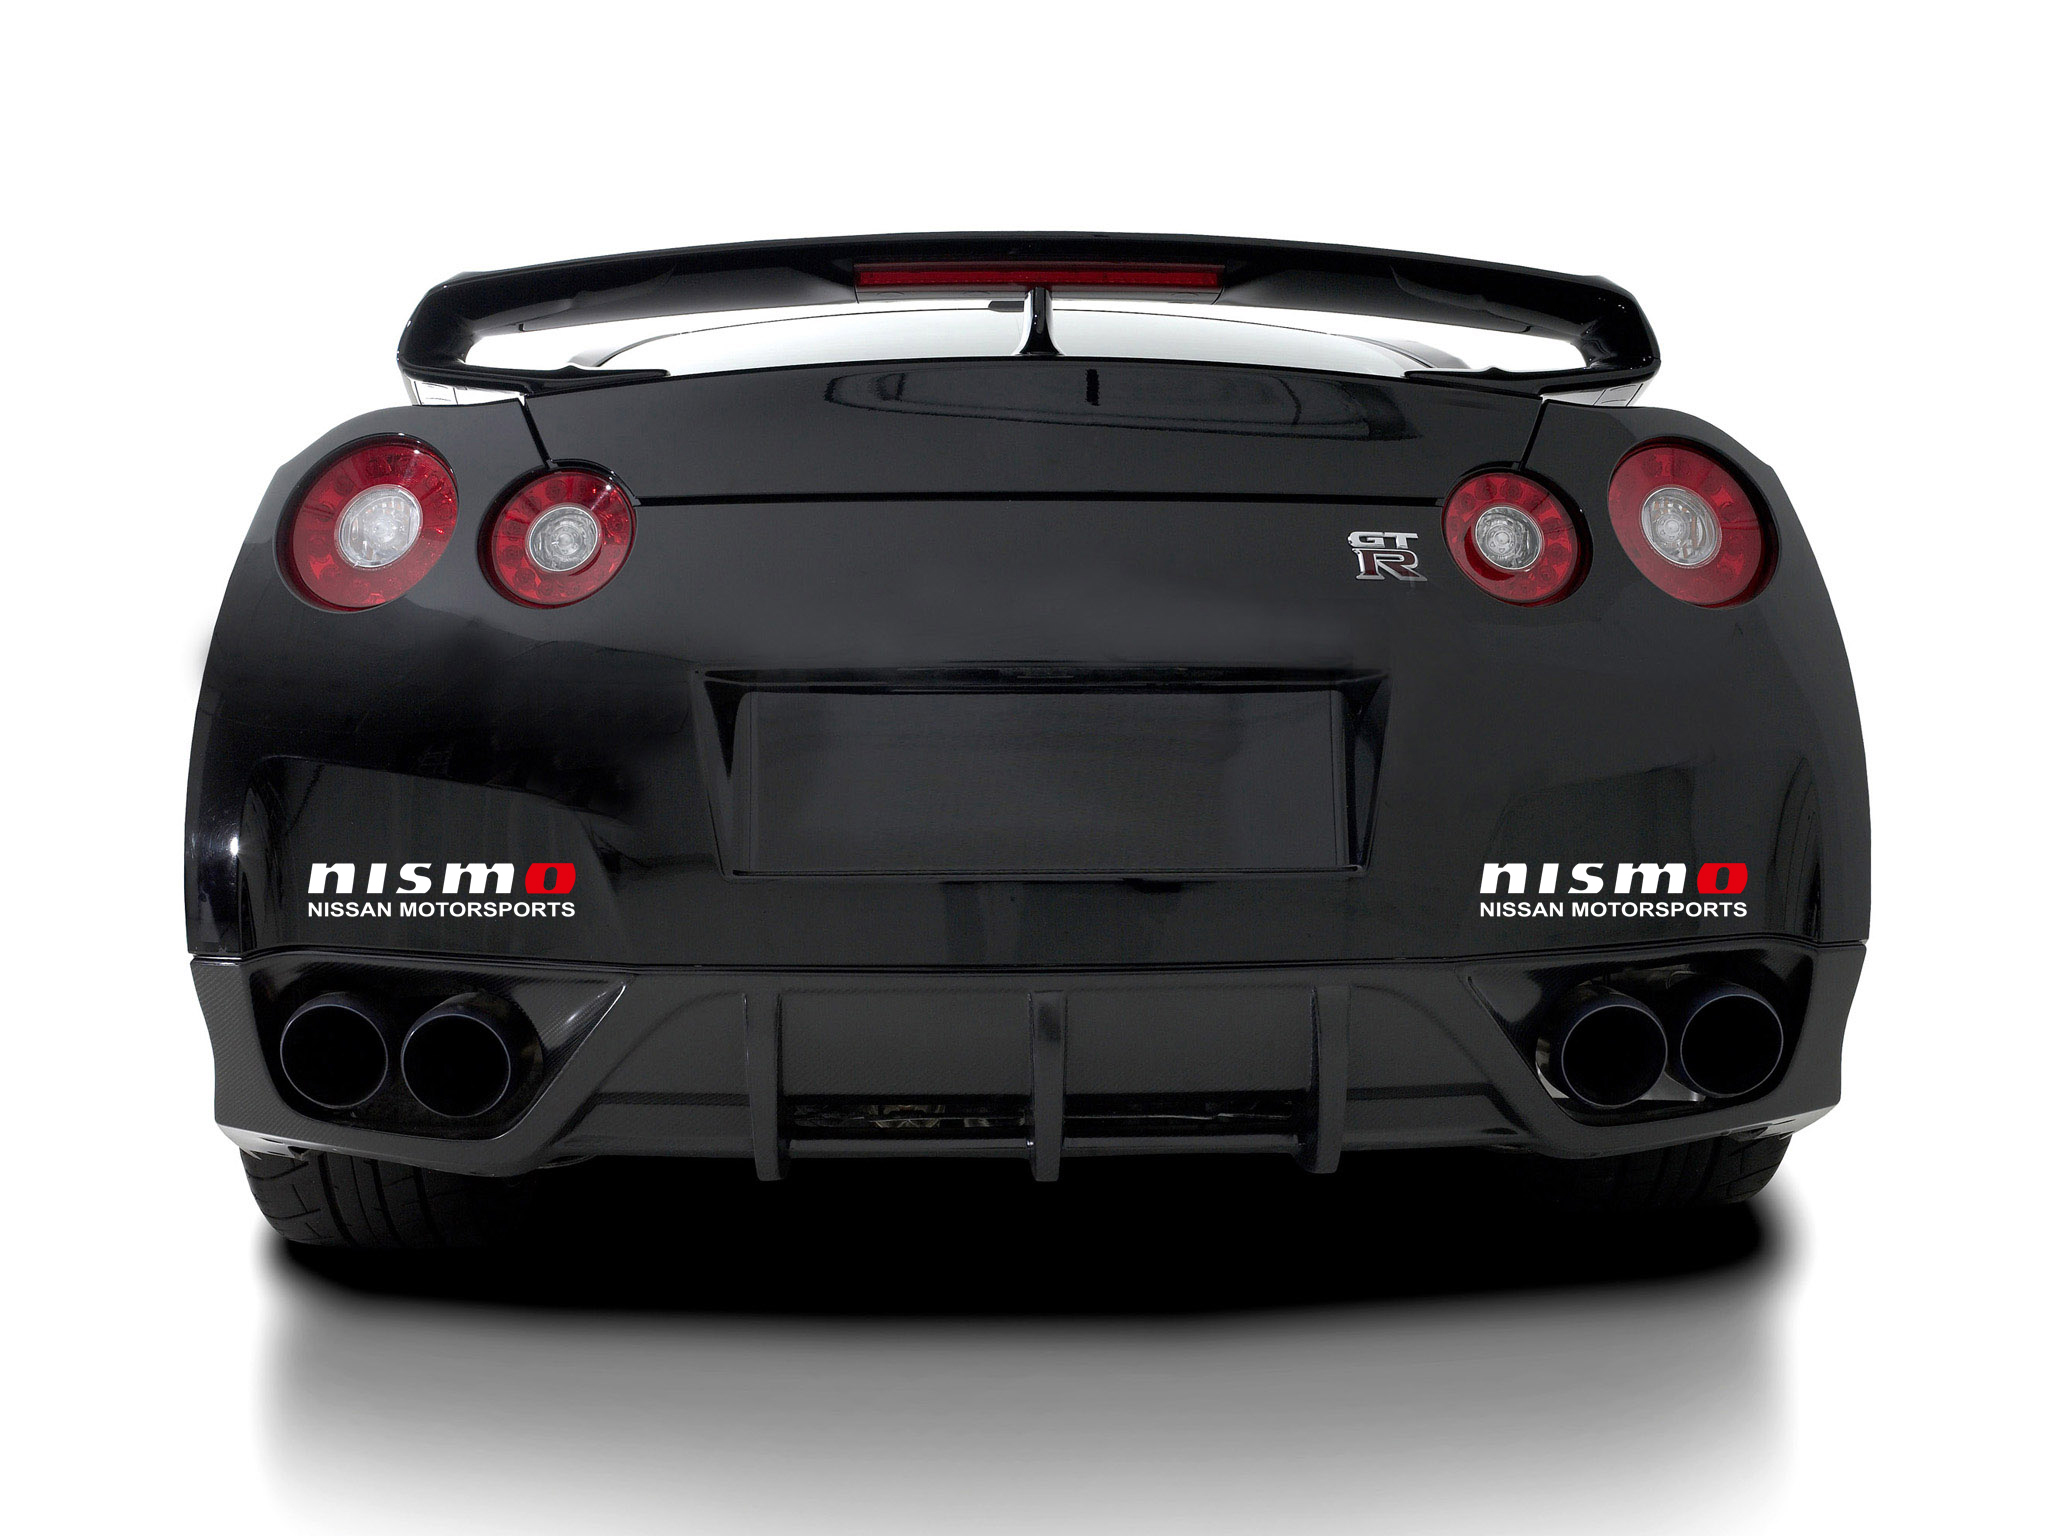 2x NISMO Nissan Motorsports Racing Vinyl Aufkleber passend für GTR Altima 350Z 370Z